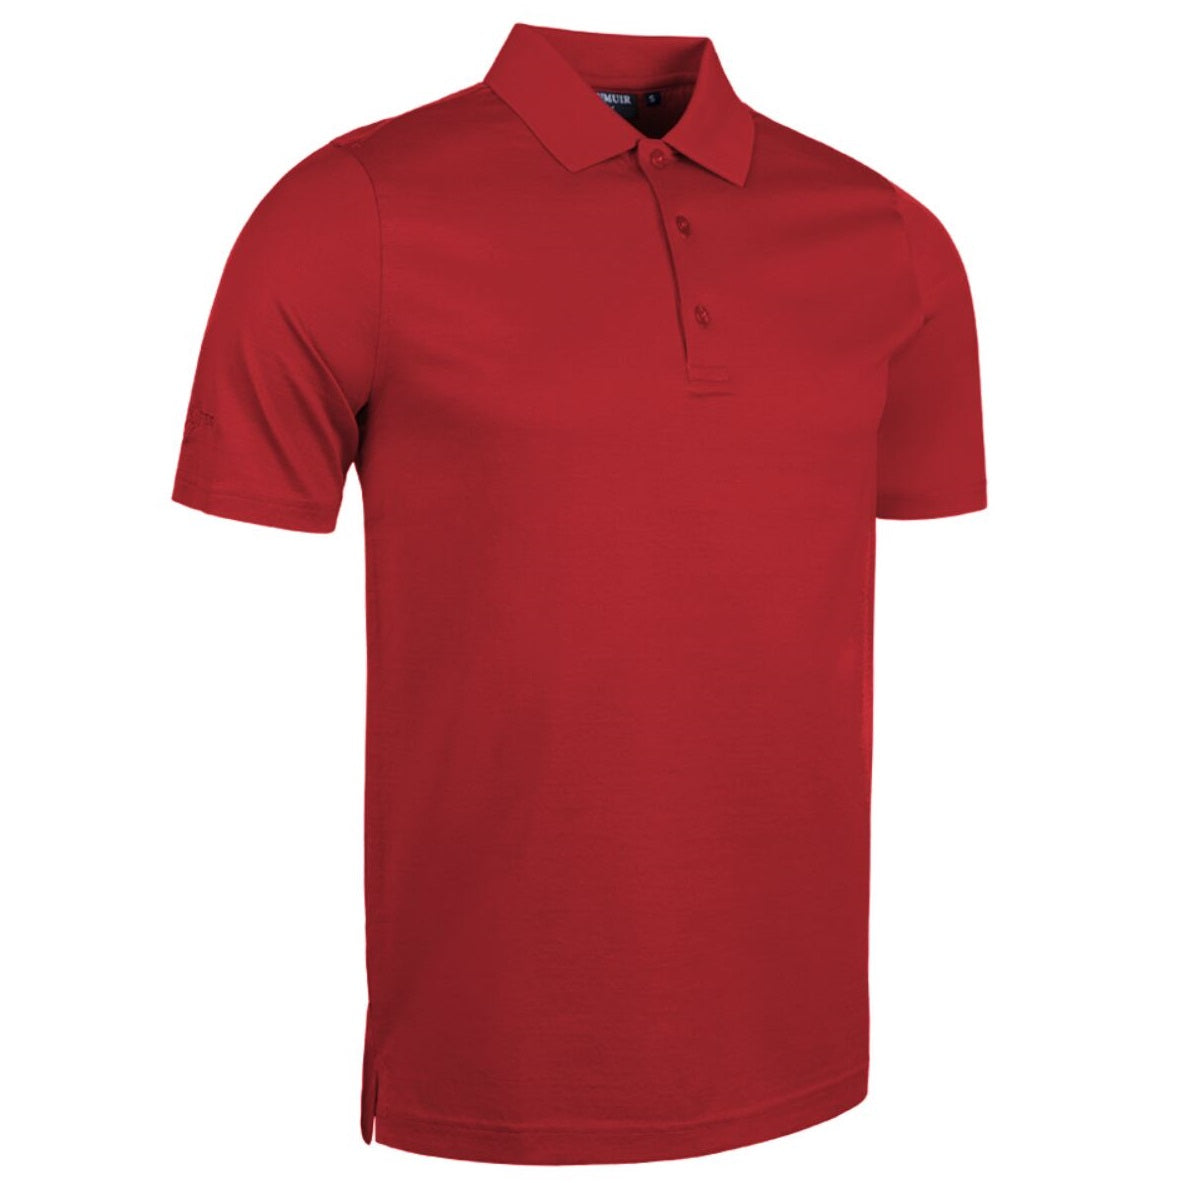 GLENMUIR Tarth Mercerised Cotton Polo Shirt - Mens - Garnet